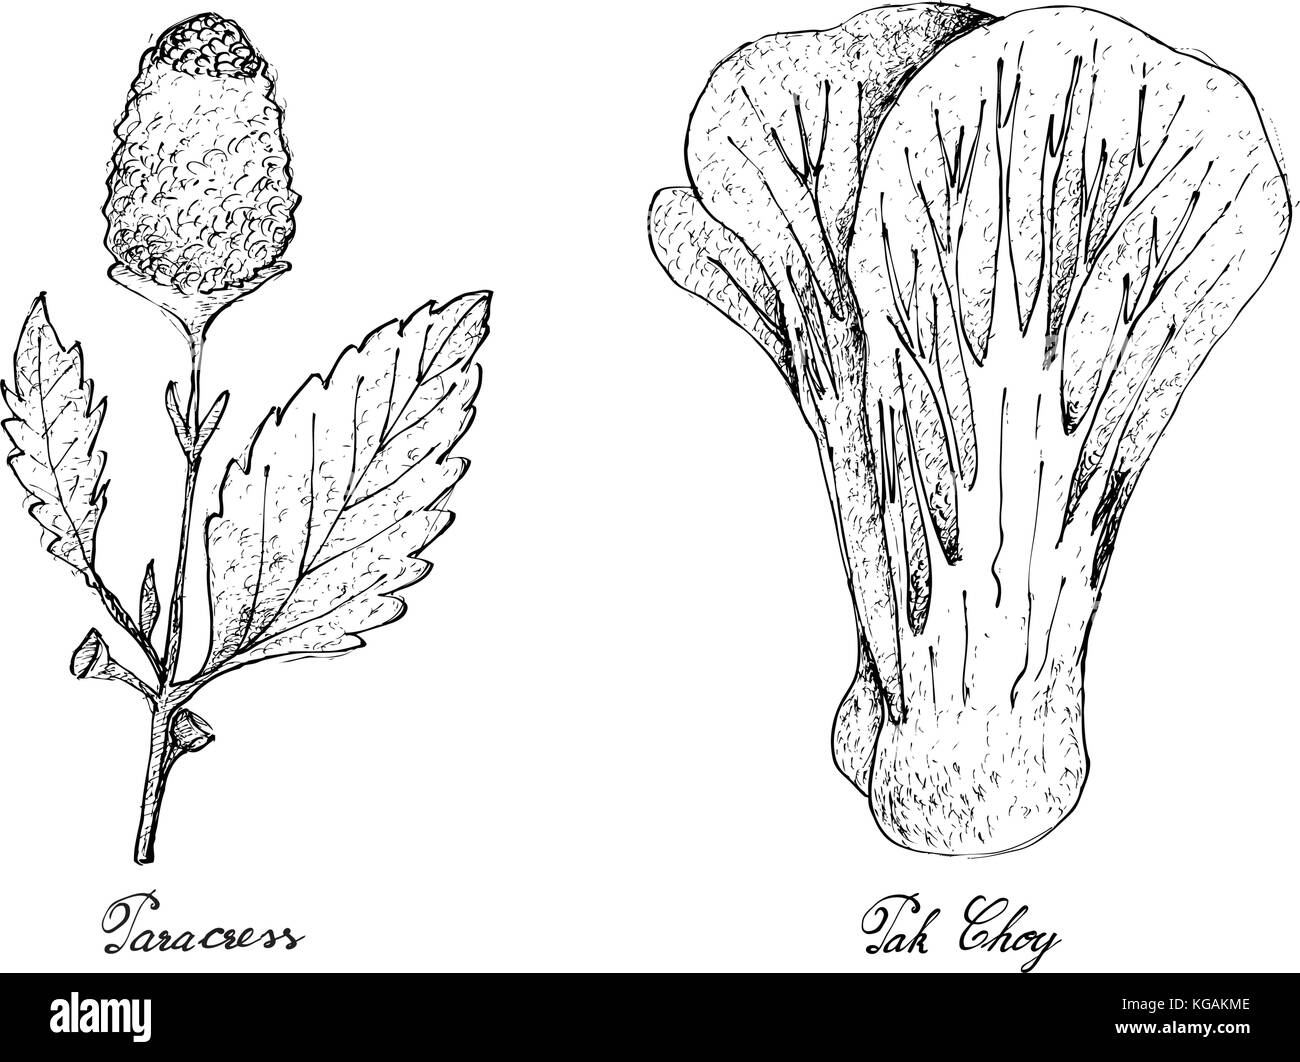 Salat, Illustration von Hand gezeichnete Skizze köstliche frische grüne Parakresse und Pak choy Pflanzen auf weißem Hintergrund. Stock Vektor